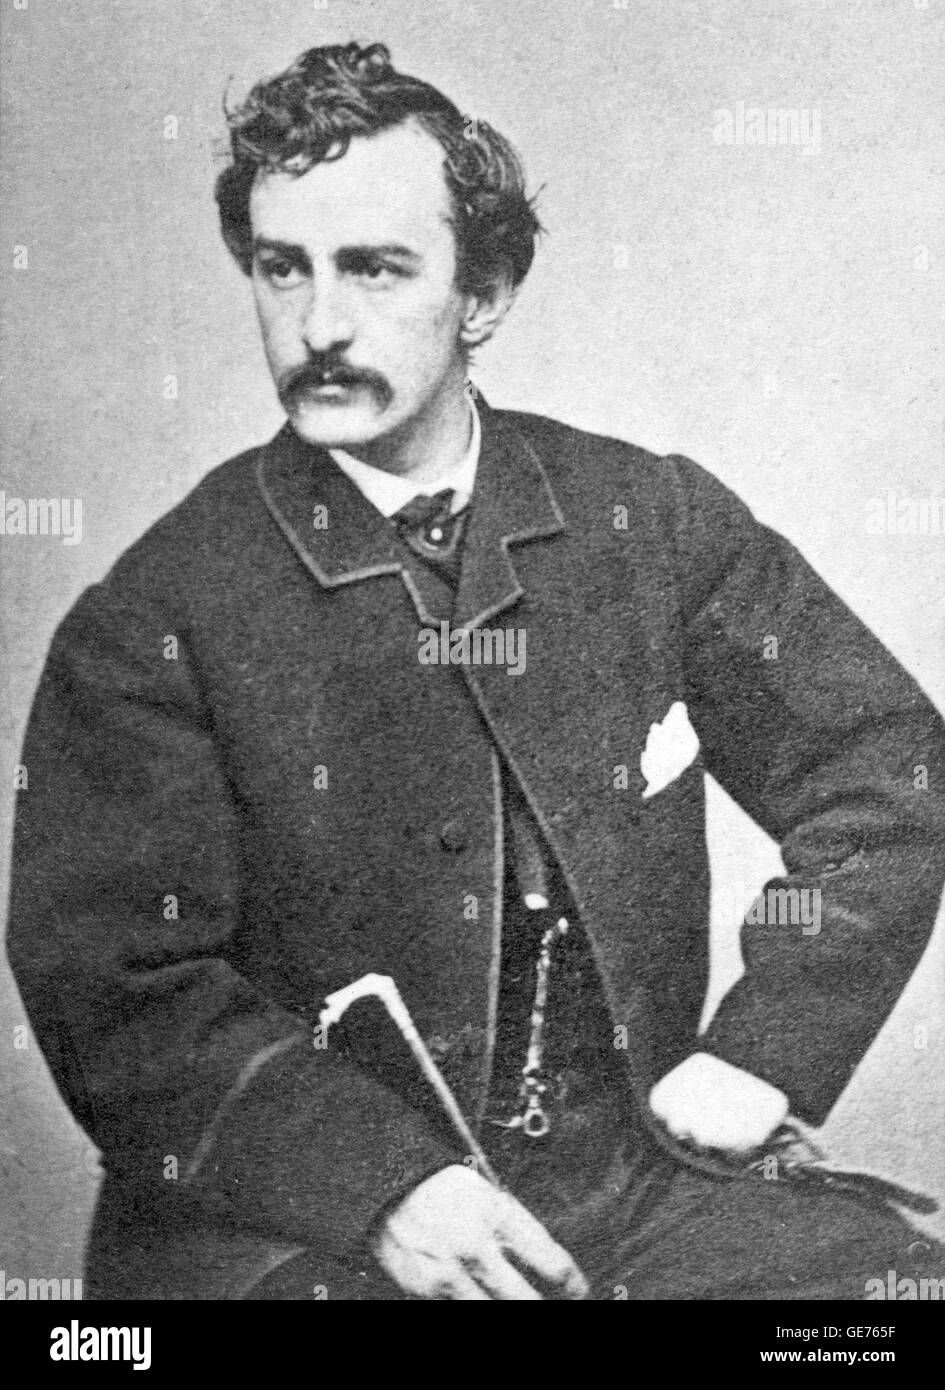 JOHN WILKES BOOTH (1838-1865) amerikanischen Bühnenschauspieler der Präsident Lincoln am 14. April 1865 ermordet Stockfoto